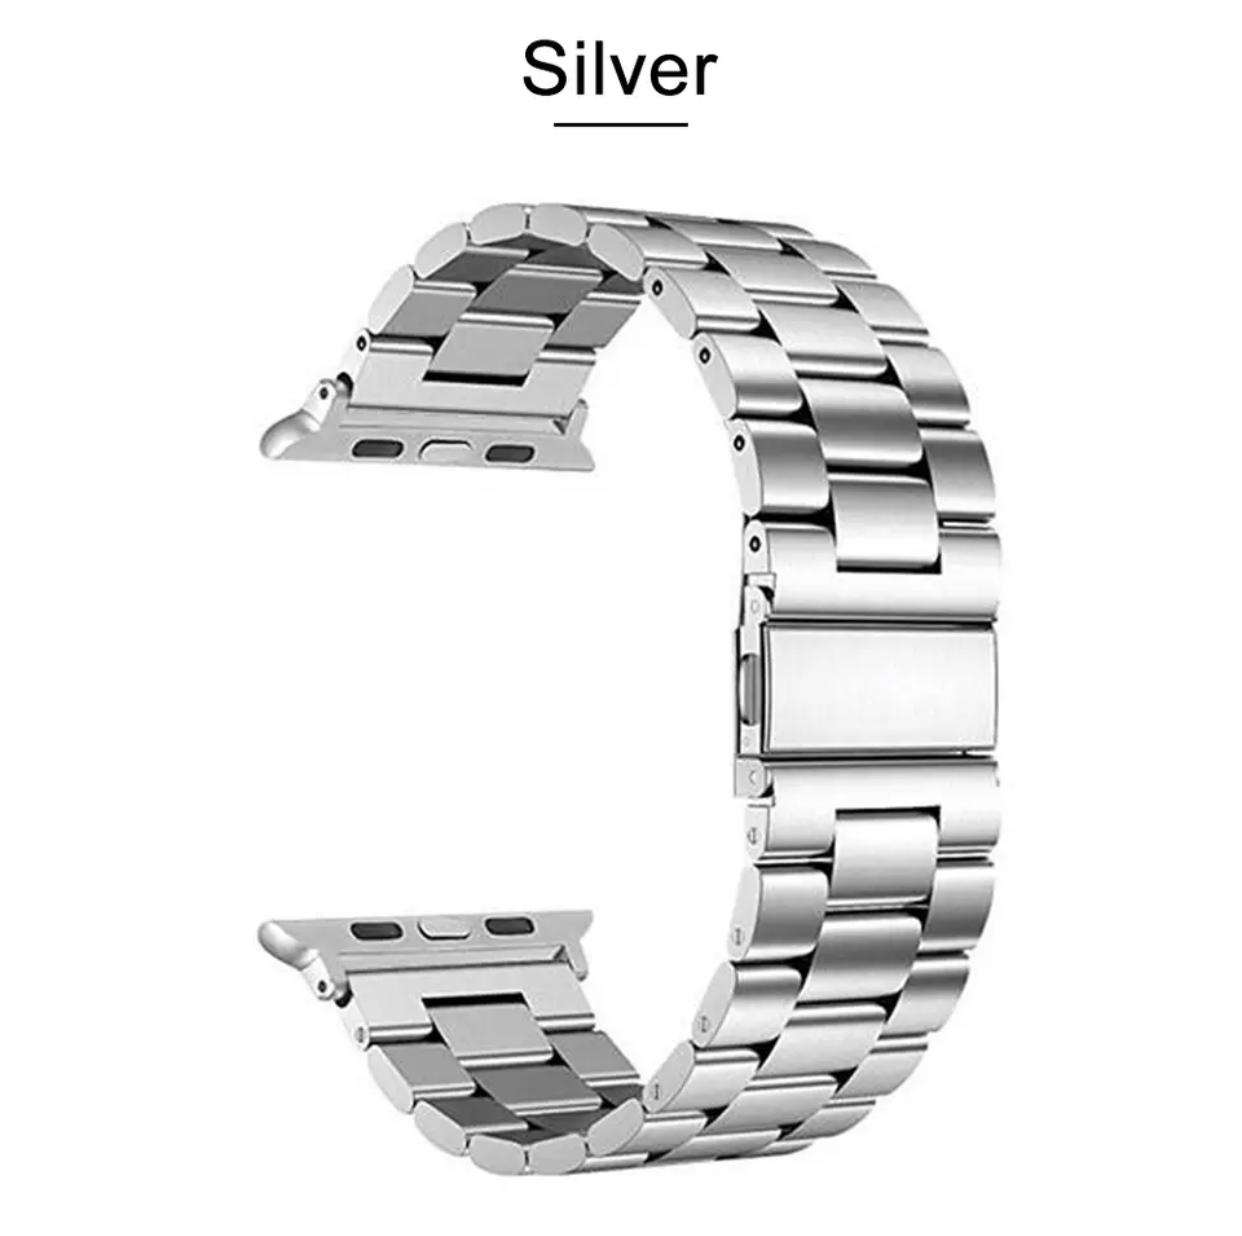 Curea pentru Apple Watch argintie cu zale si conectori A8918 CU1